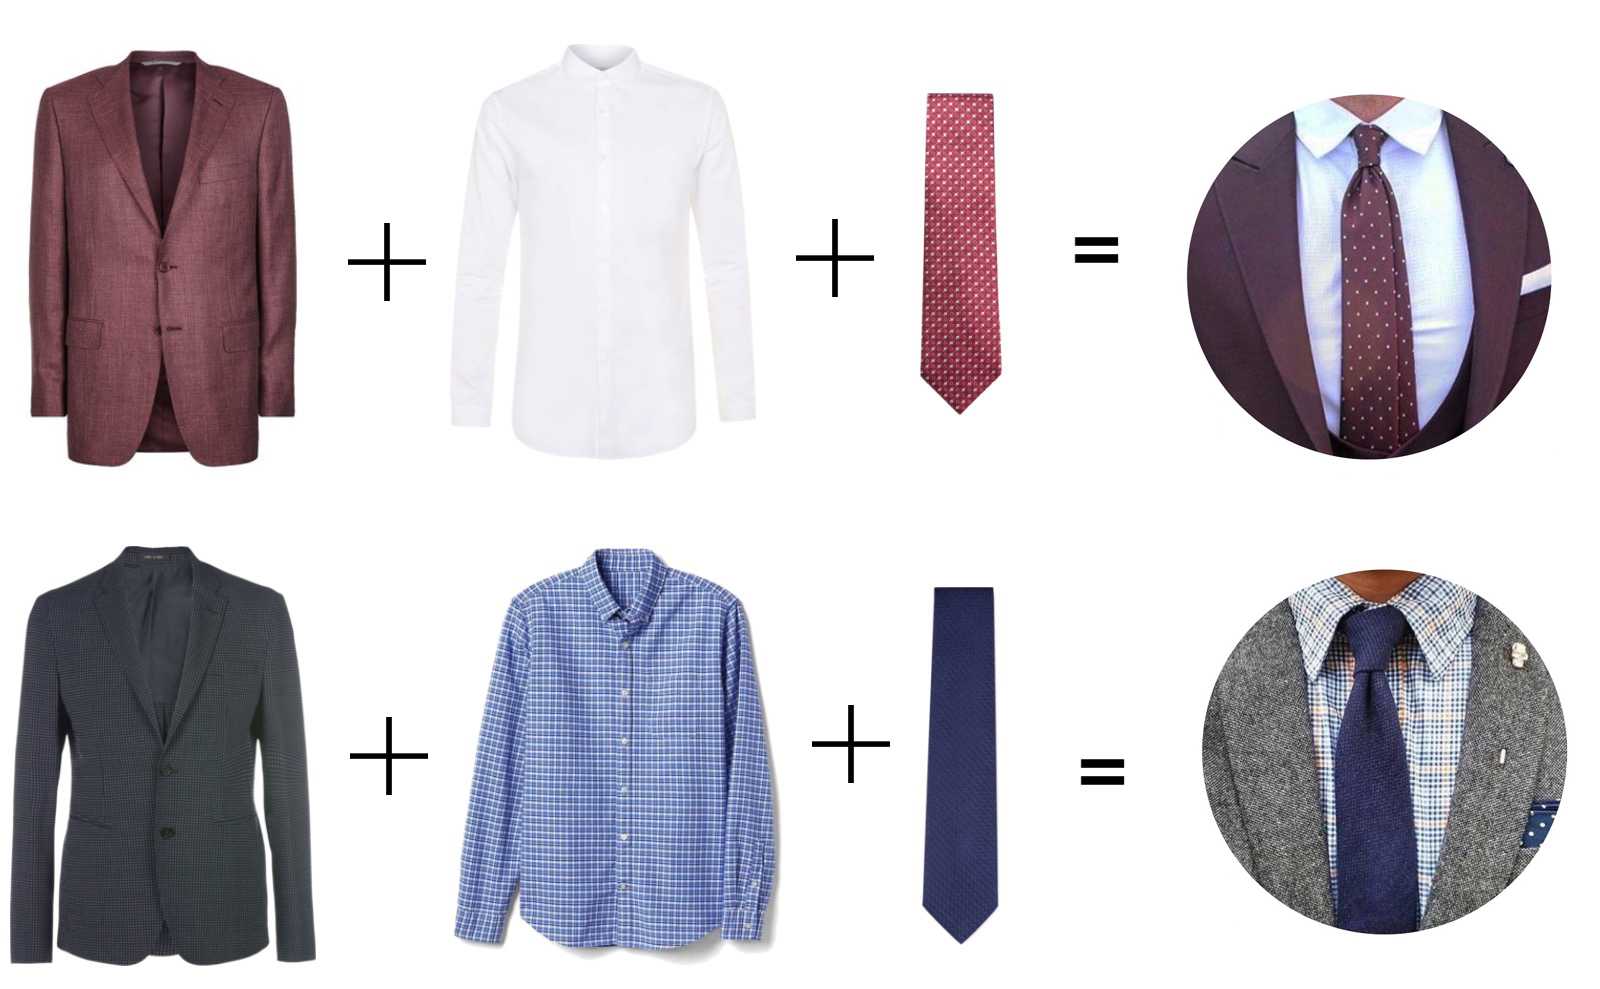 Какой длины должен быть галстук – этот вопрос интересует многих мужчин, которые хотят грамотно носить данный стильный аксессуар